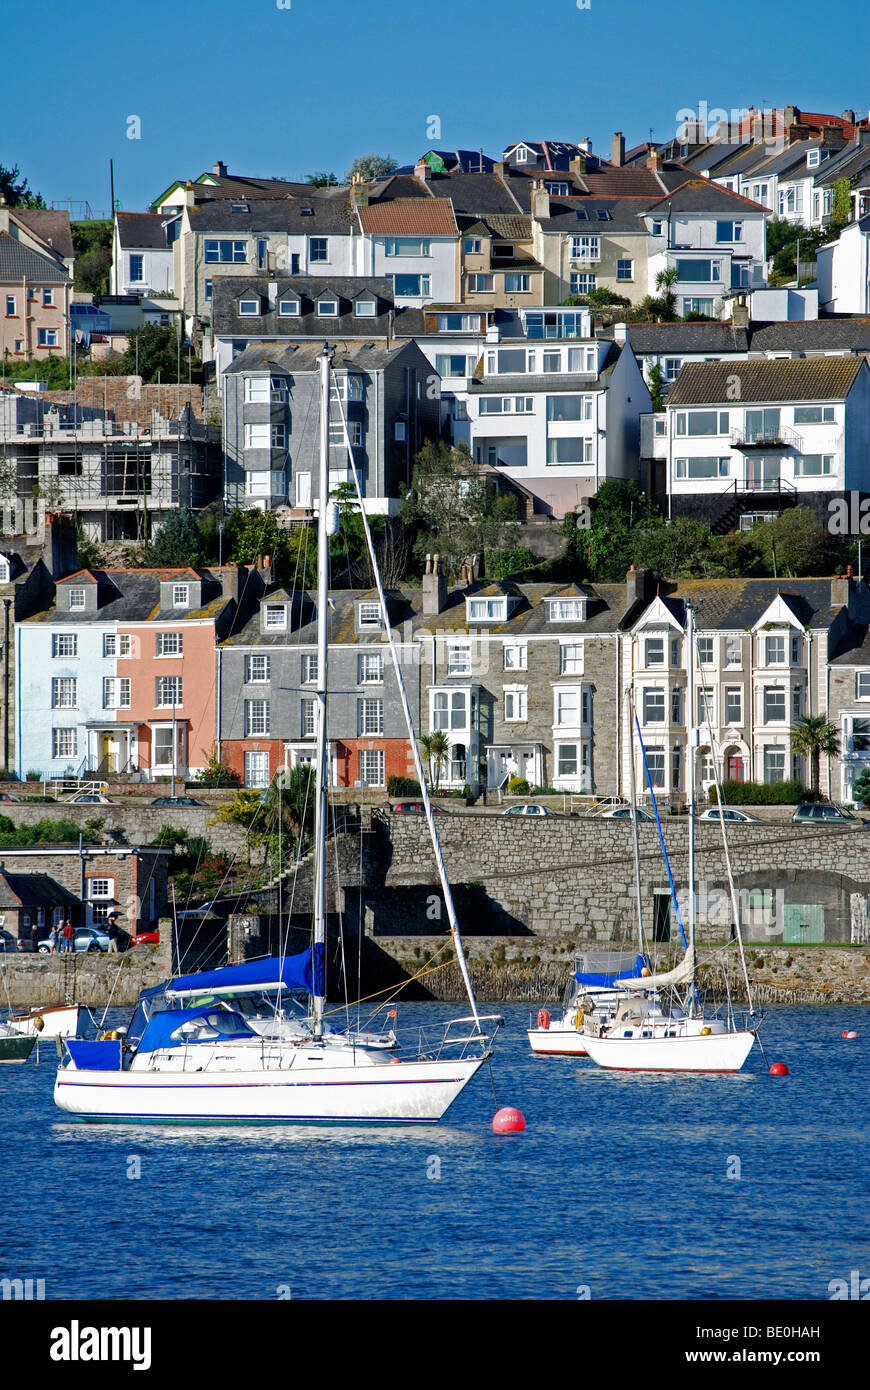 Chambres donnent sur des bateaux dans la baie de Falmouth, à Cornwall, uk Banque D'Images